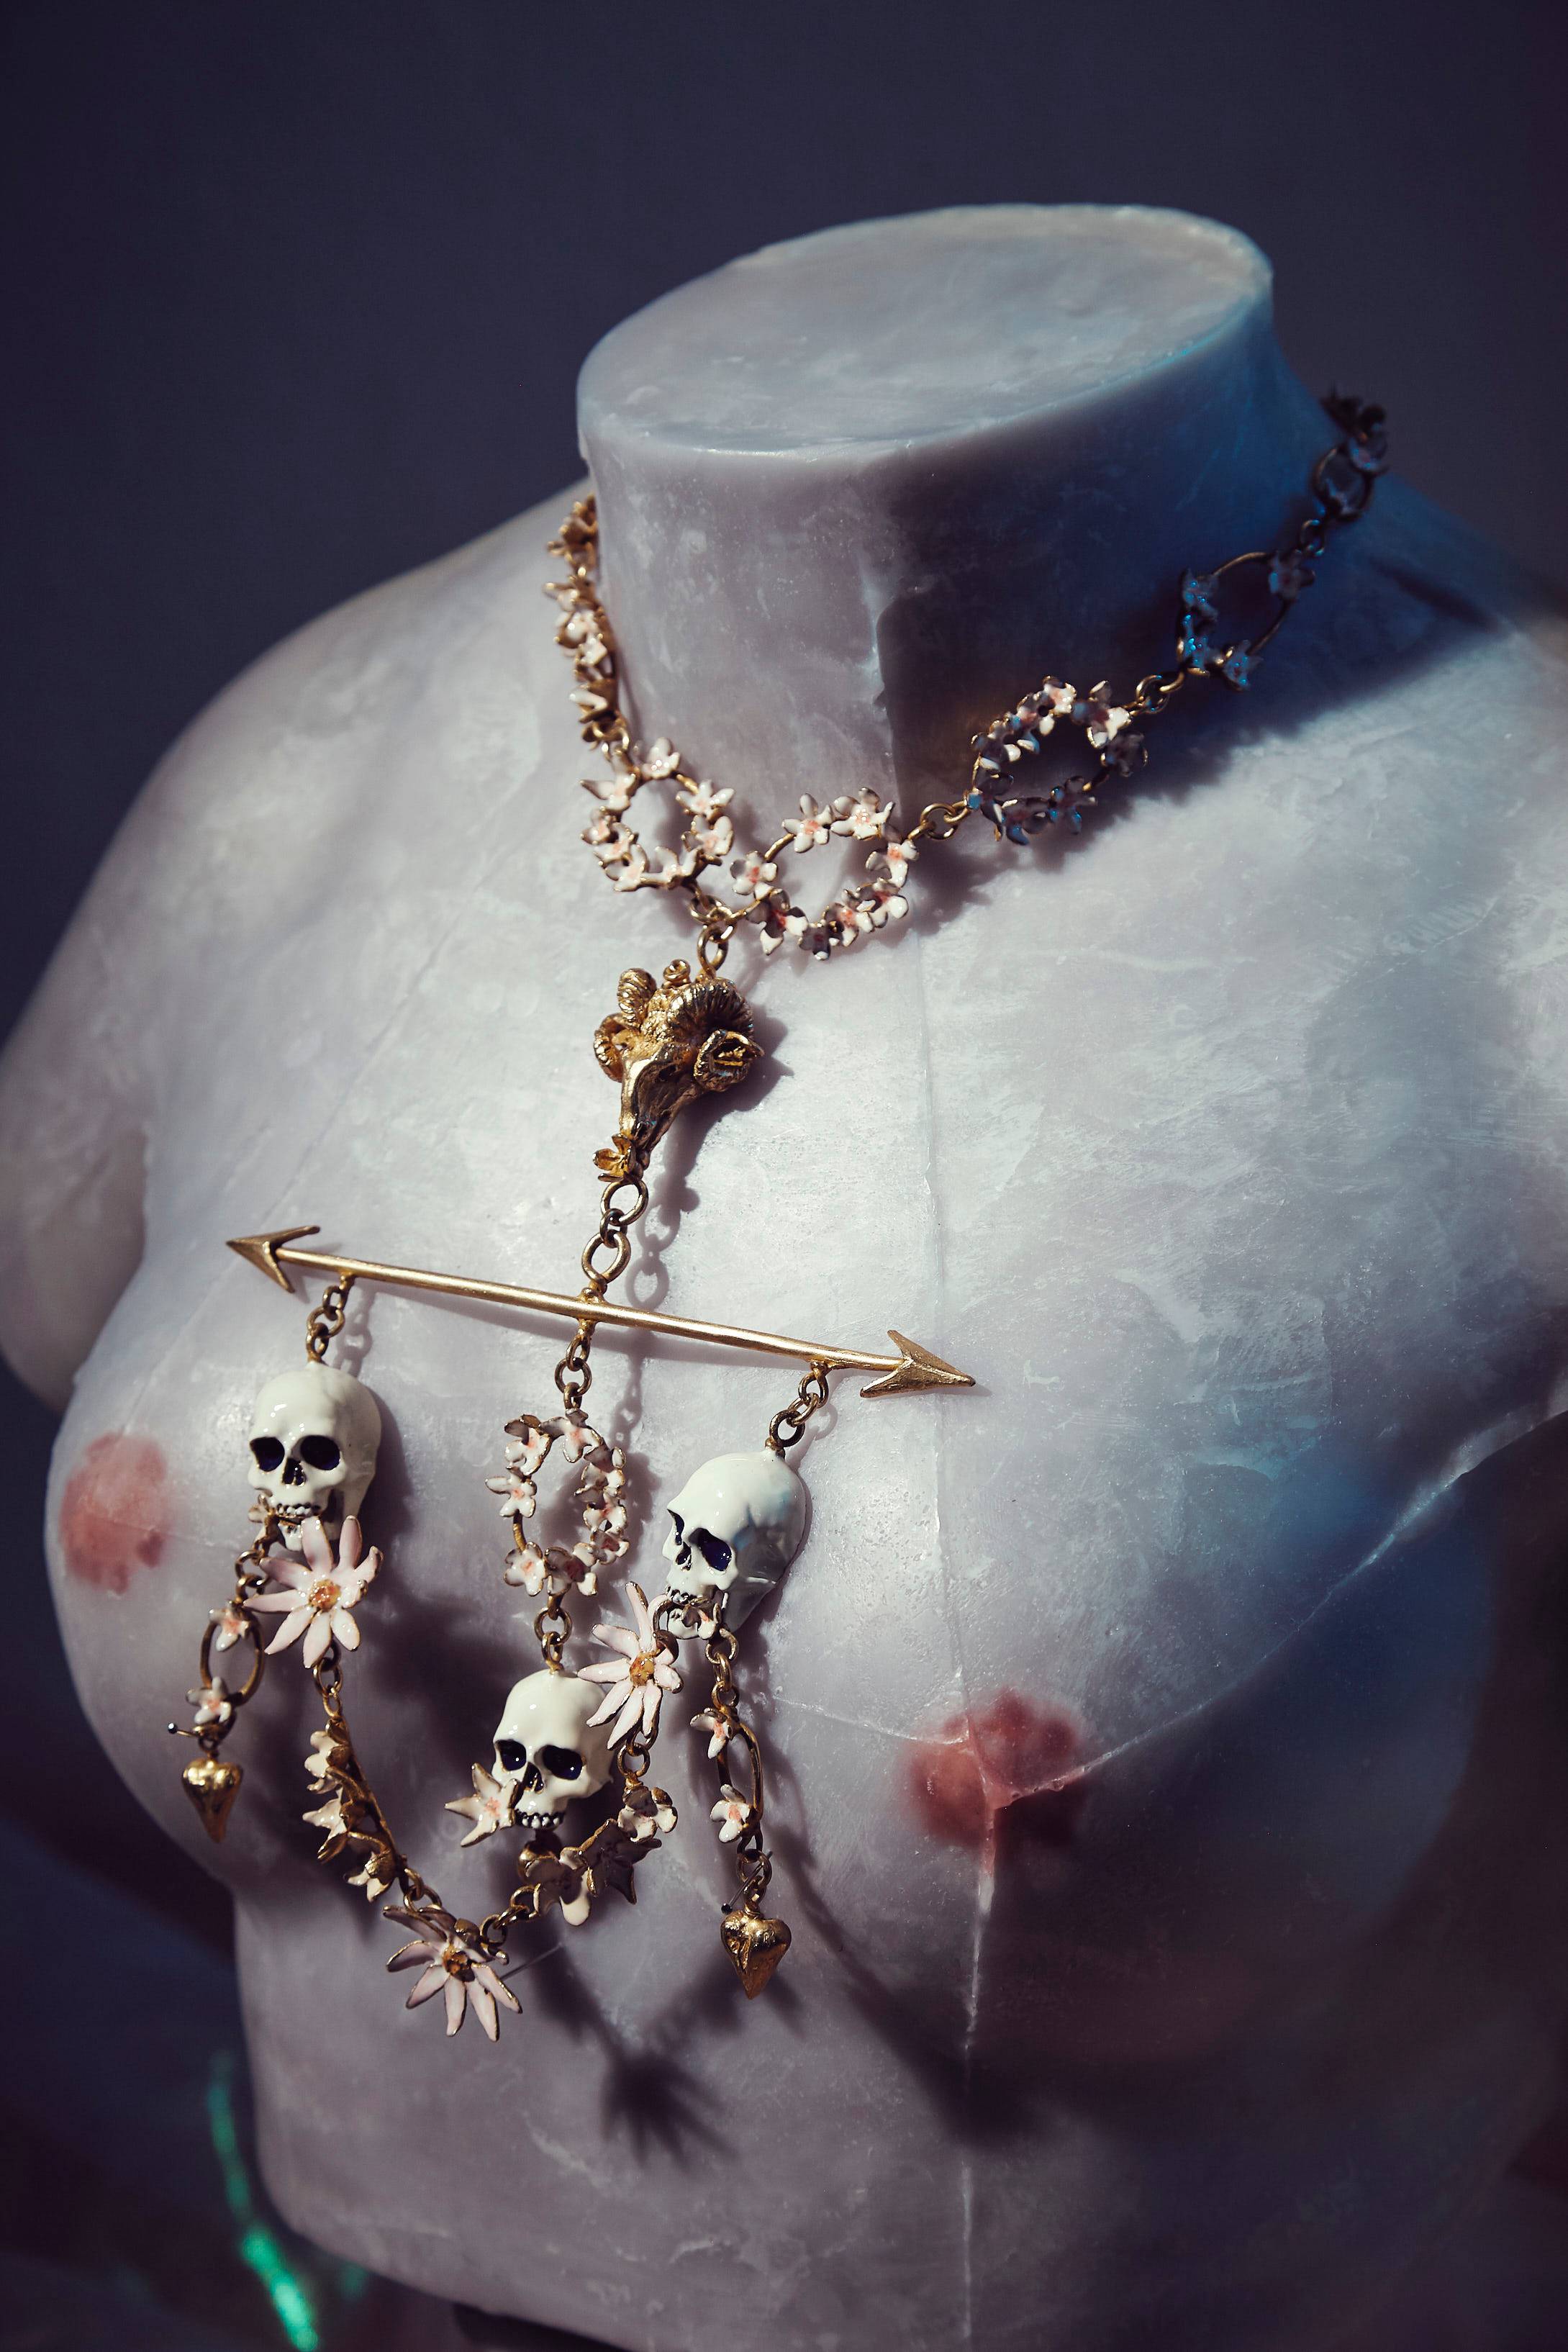 Le styliste Samuel François présente une collection de bijoux à la flamboyance baroque